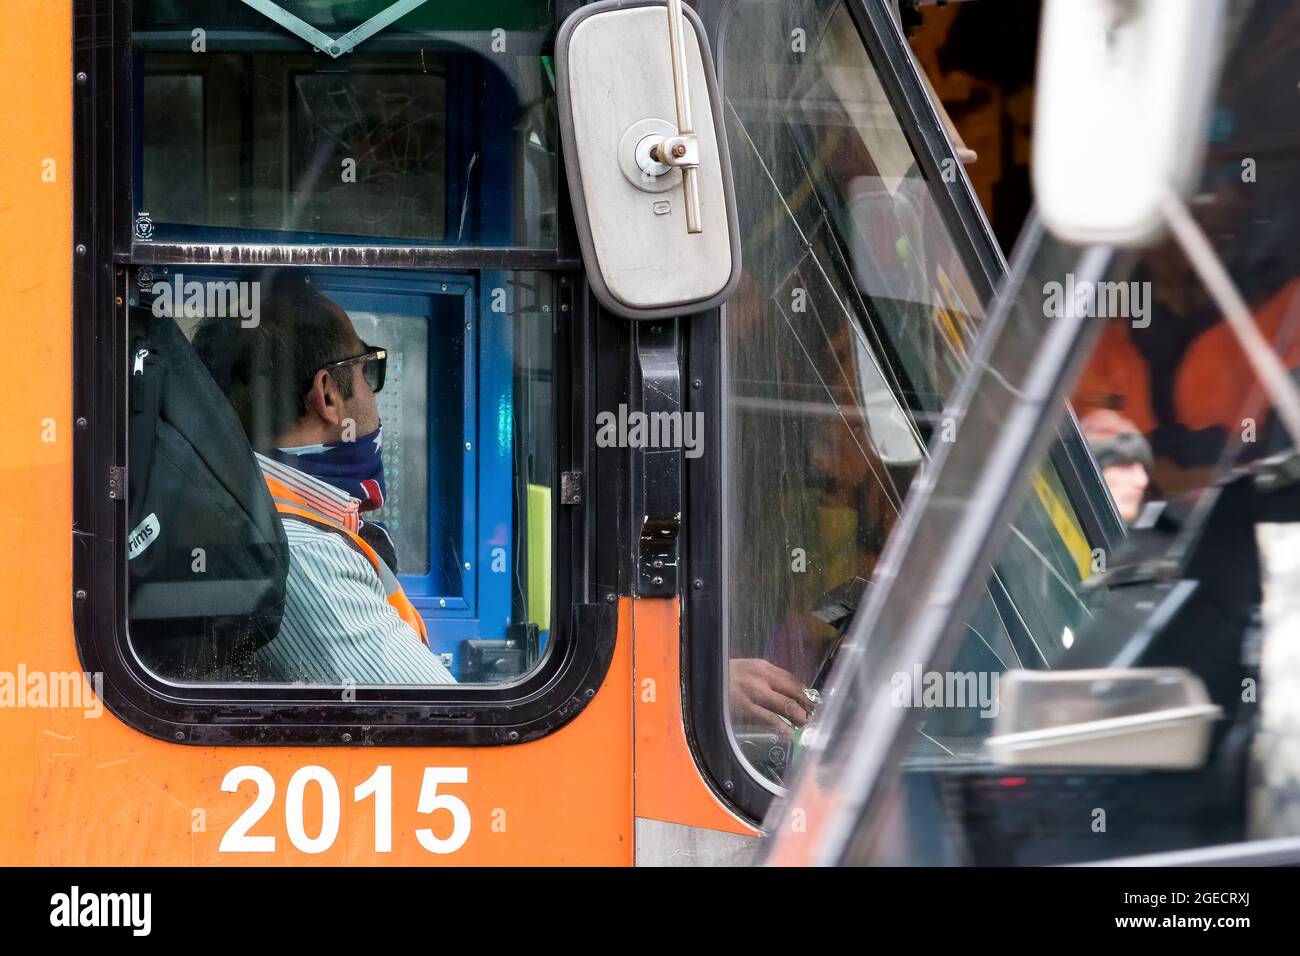 Melbourne, Australien, 25. August 2020. Ein Straßenbahnfahrer in einer Straßenbahn ist in der Bourke Street zu sehen. (Foto von Dave Hewison/Speed Media) Quelle: Dave Hewison/Speed Media/Alamy Live News Stockfoto